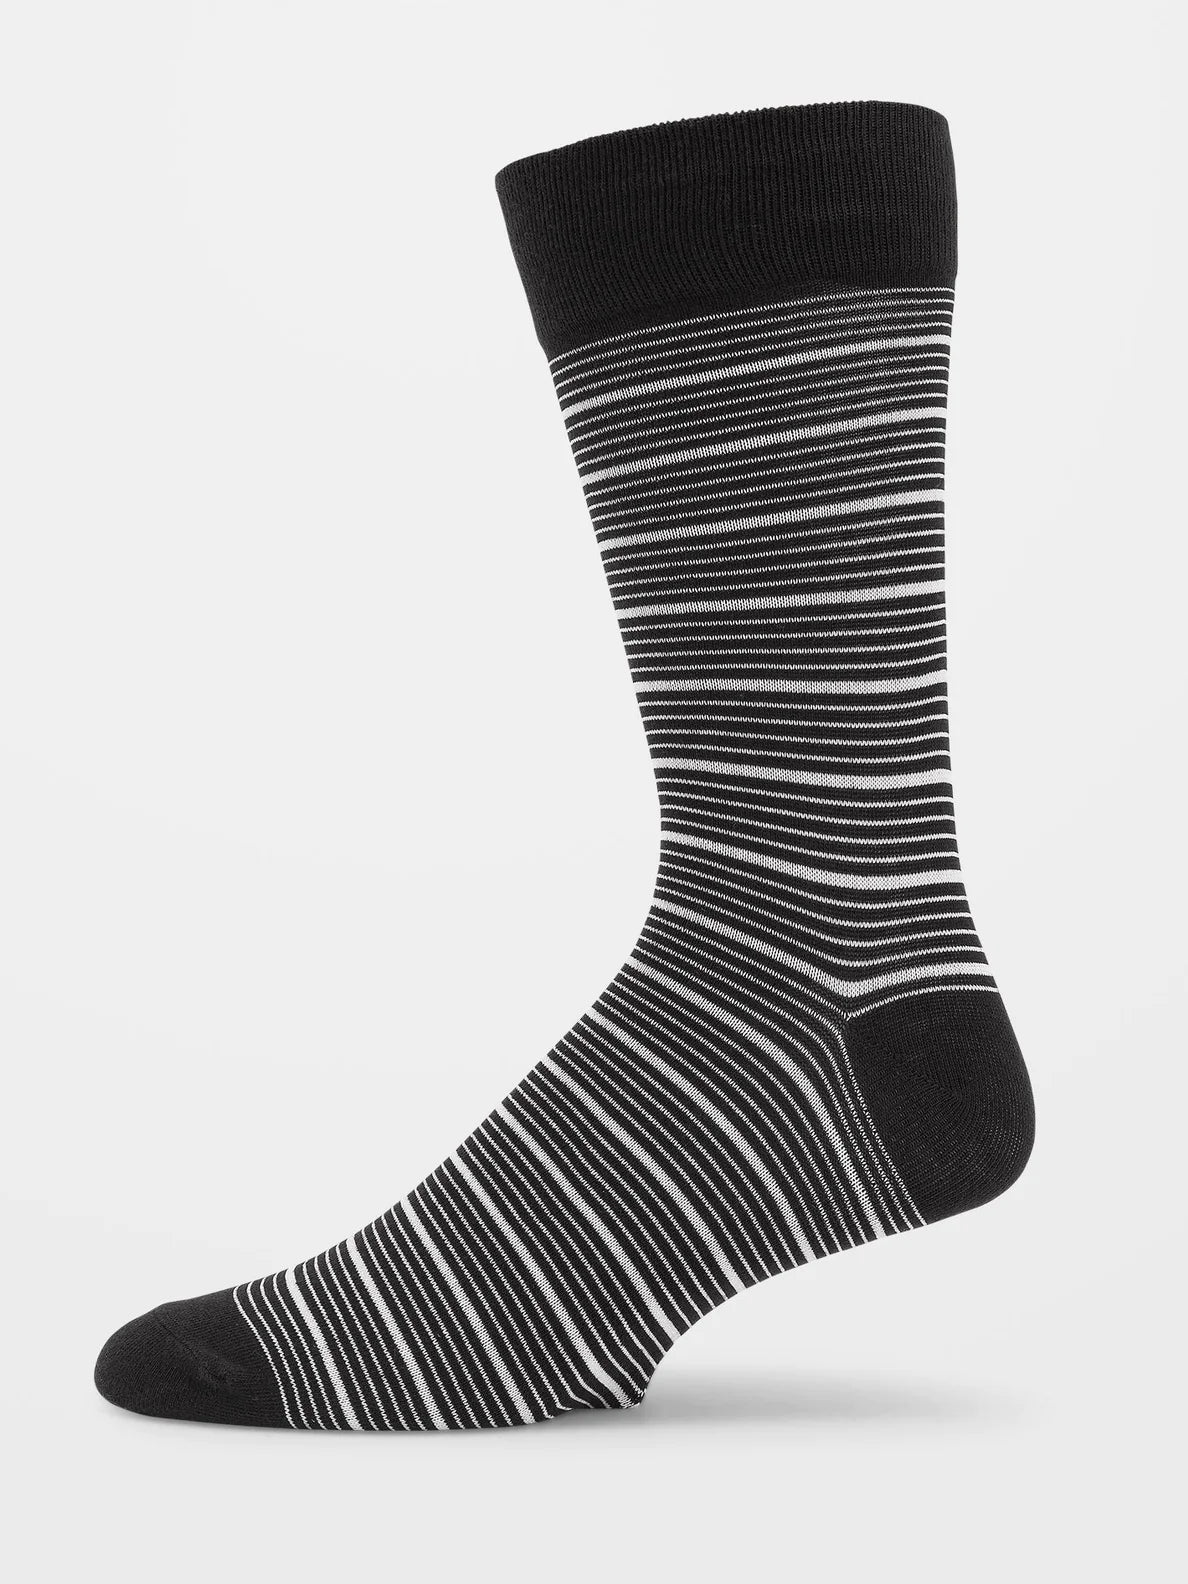 Volcom True Sock Pr Black White | surfdevils.com